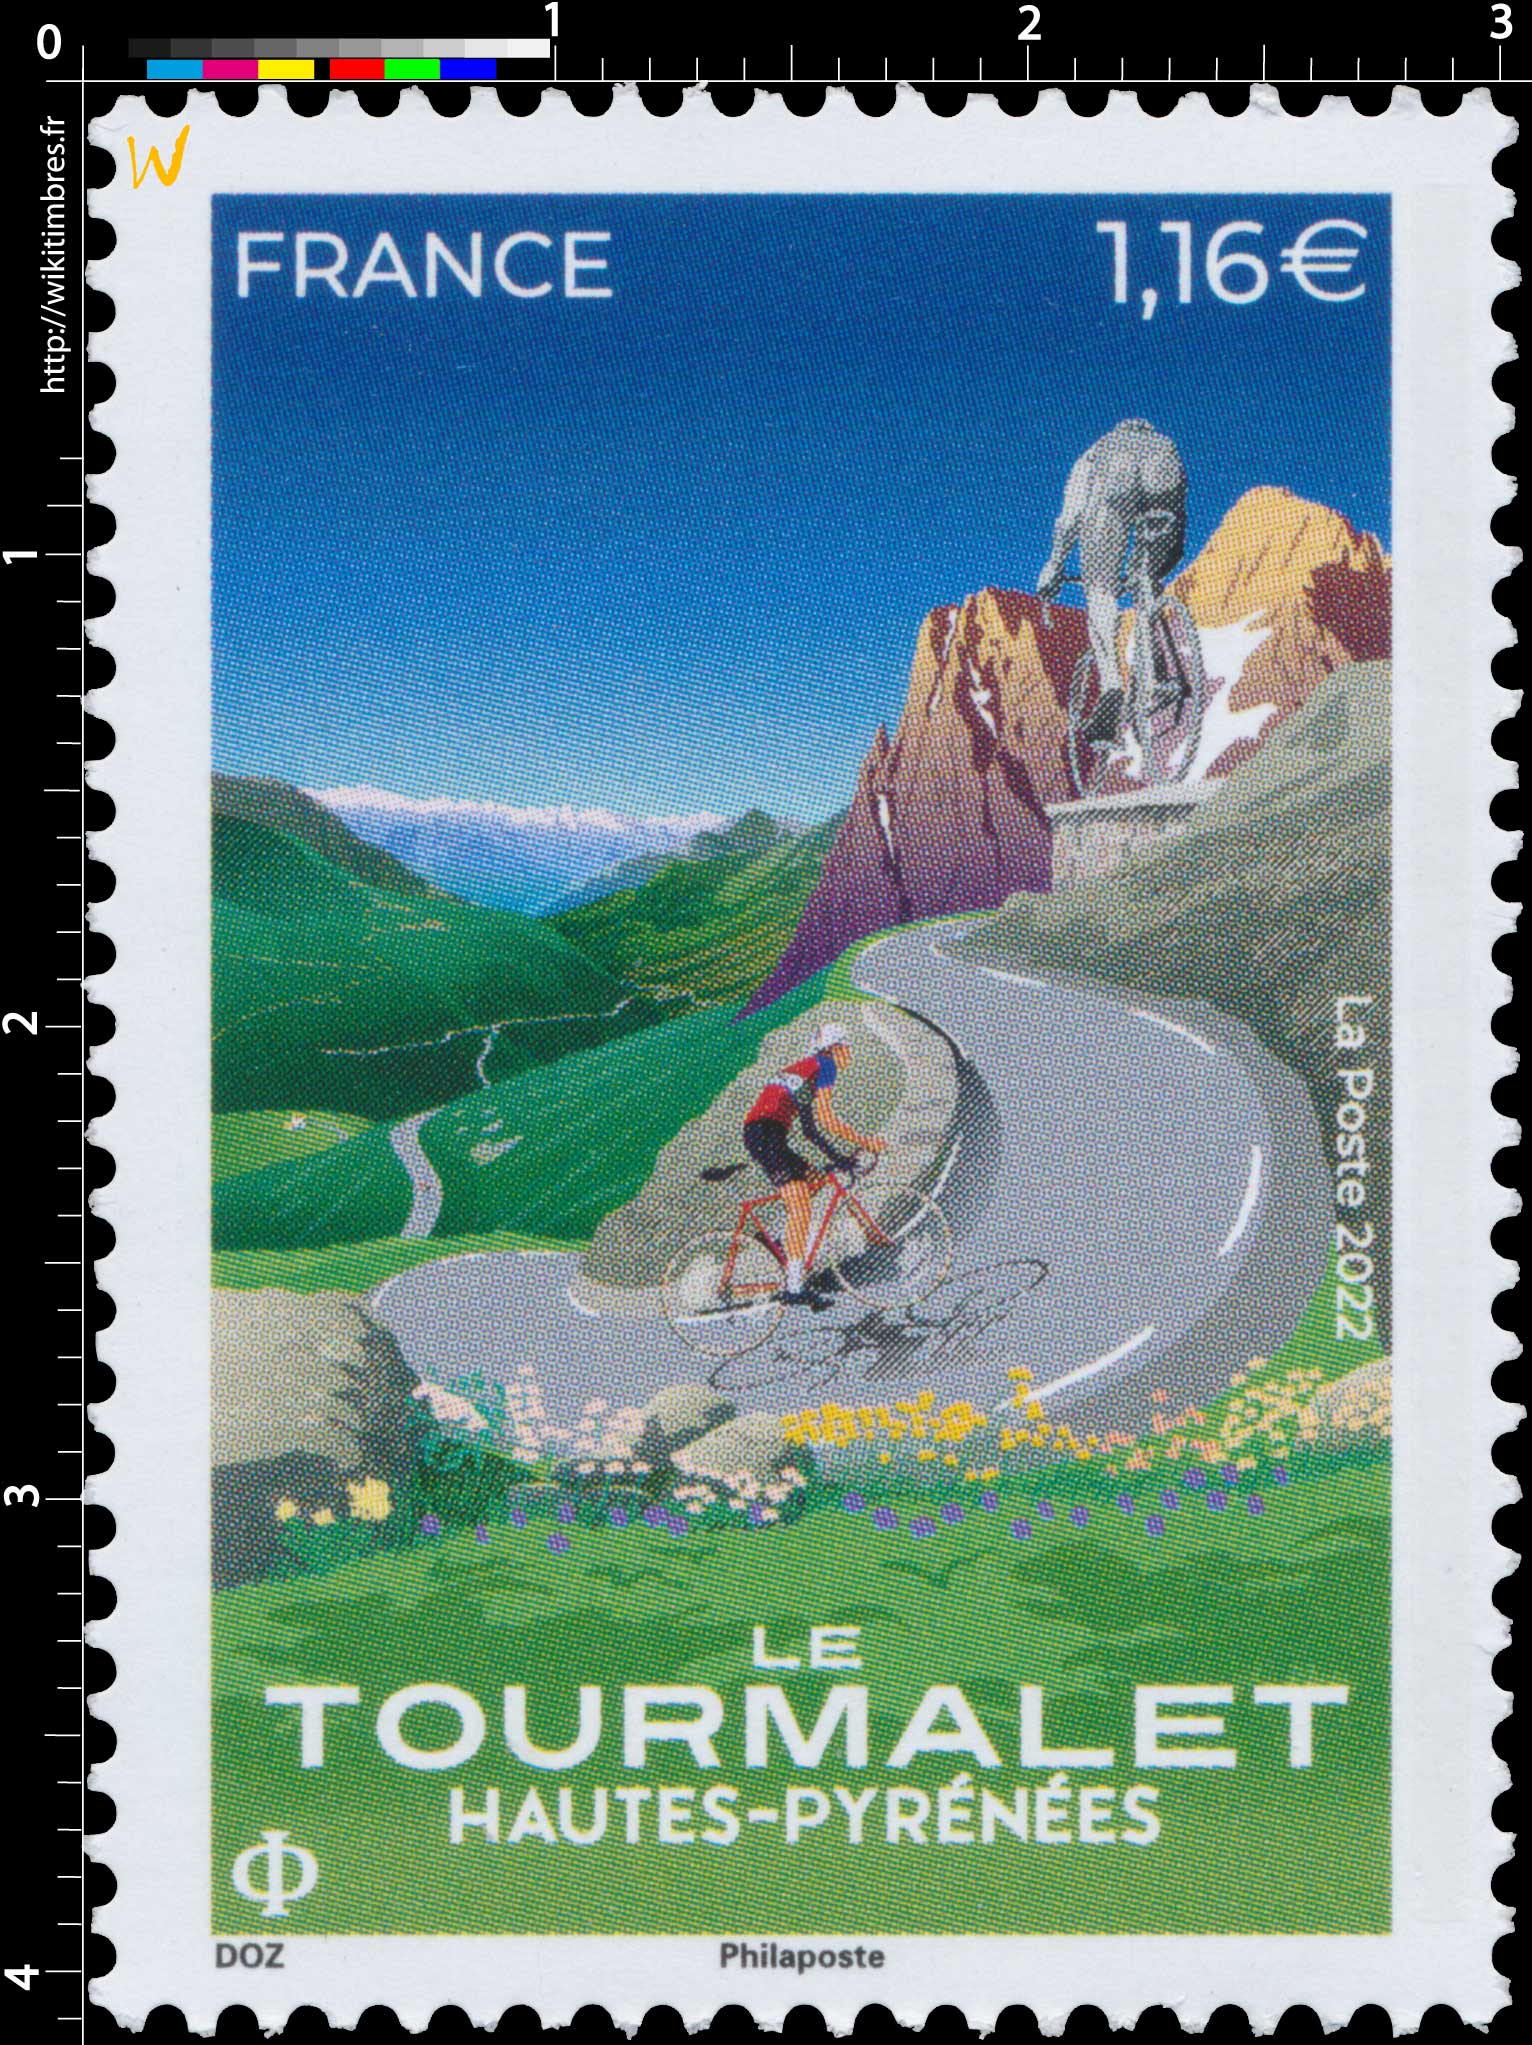 2022 Le Tourmalet  Hautes-Pyrénées